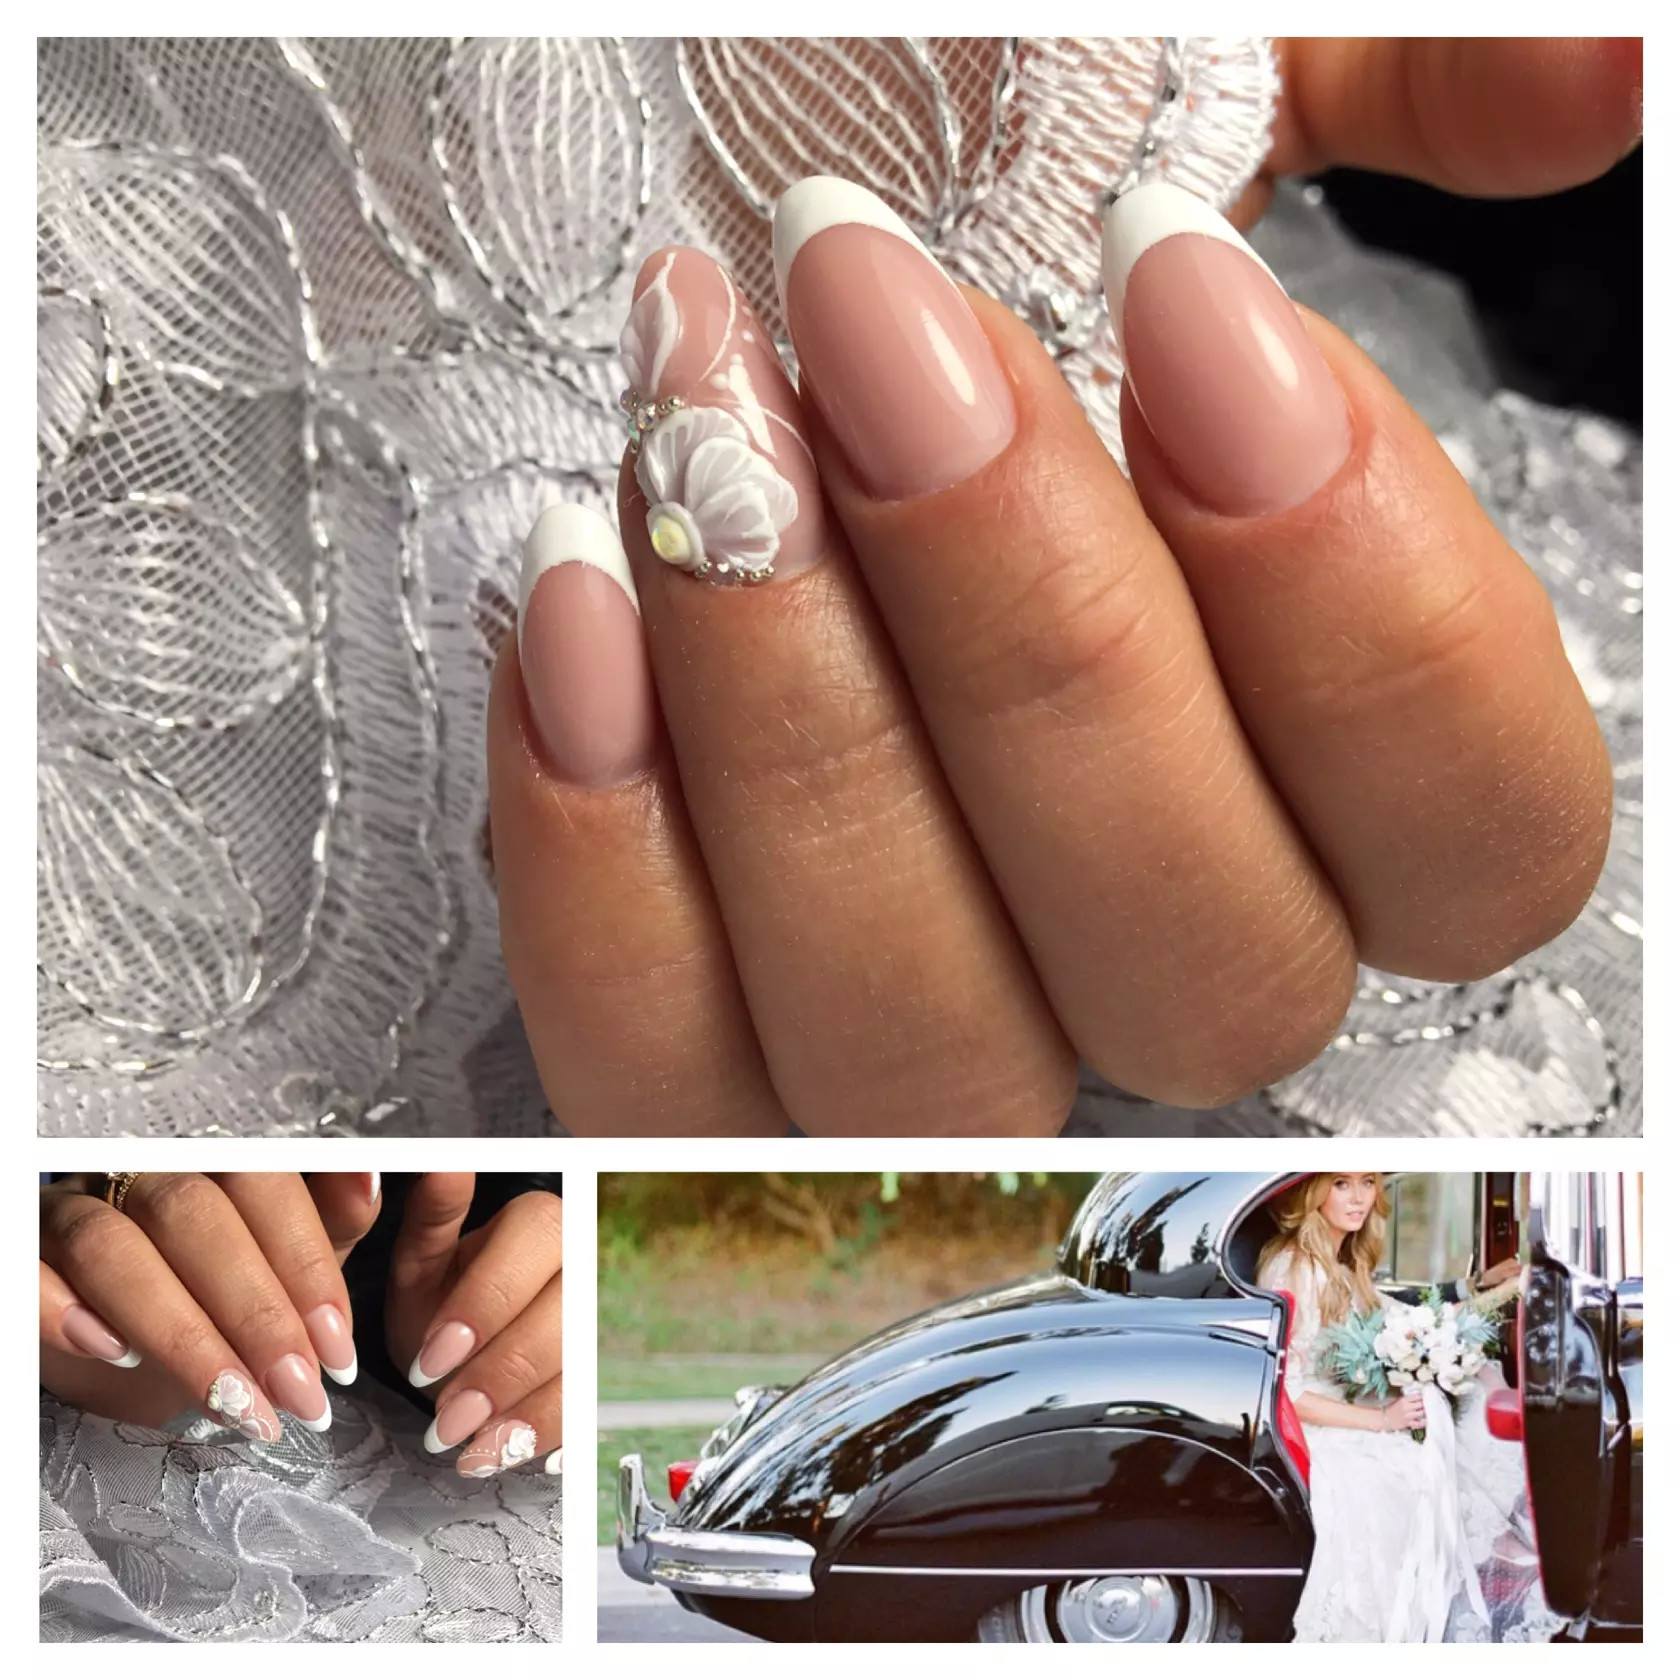 Маникюр на свадьбу для невесты с короткими ногтями миндальной